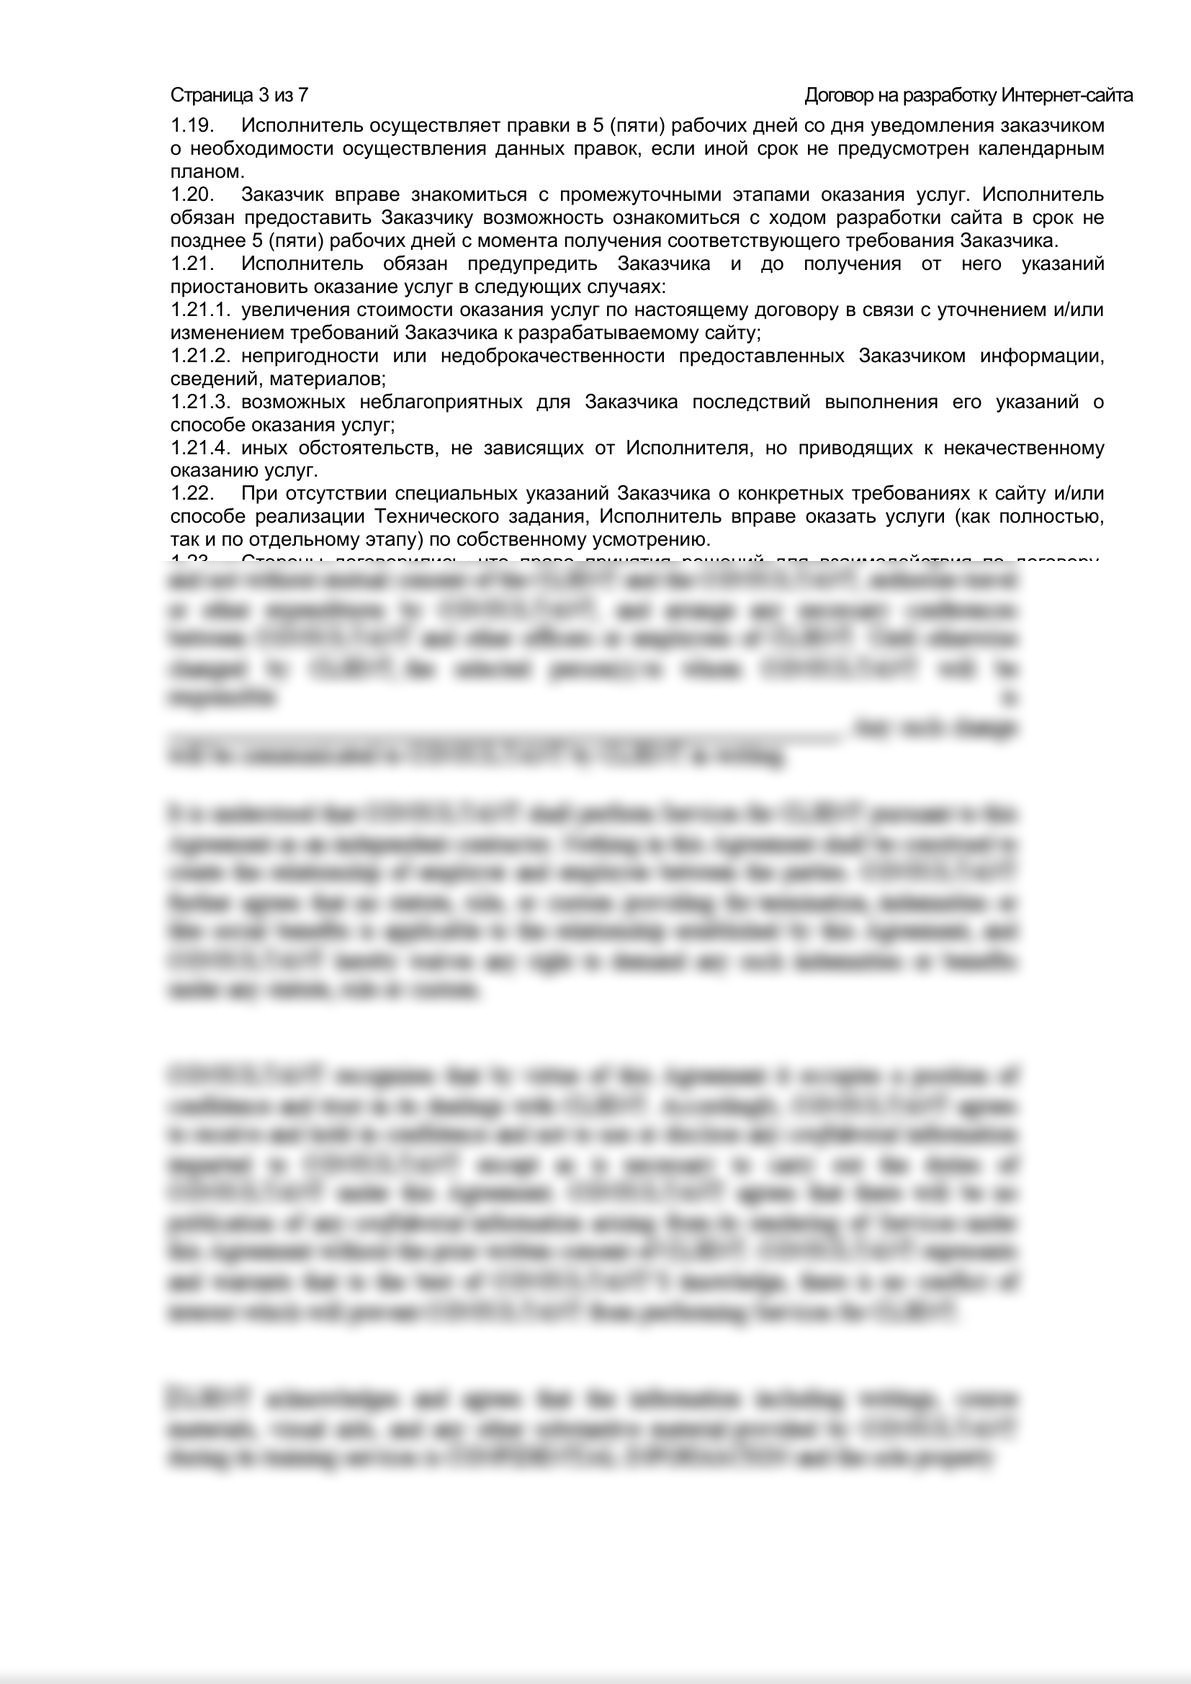 Шаблон договора на разработку Интернет-сайта-2